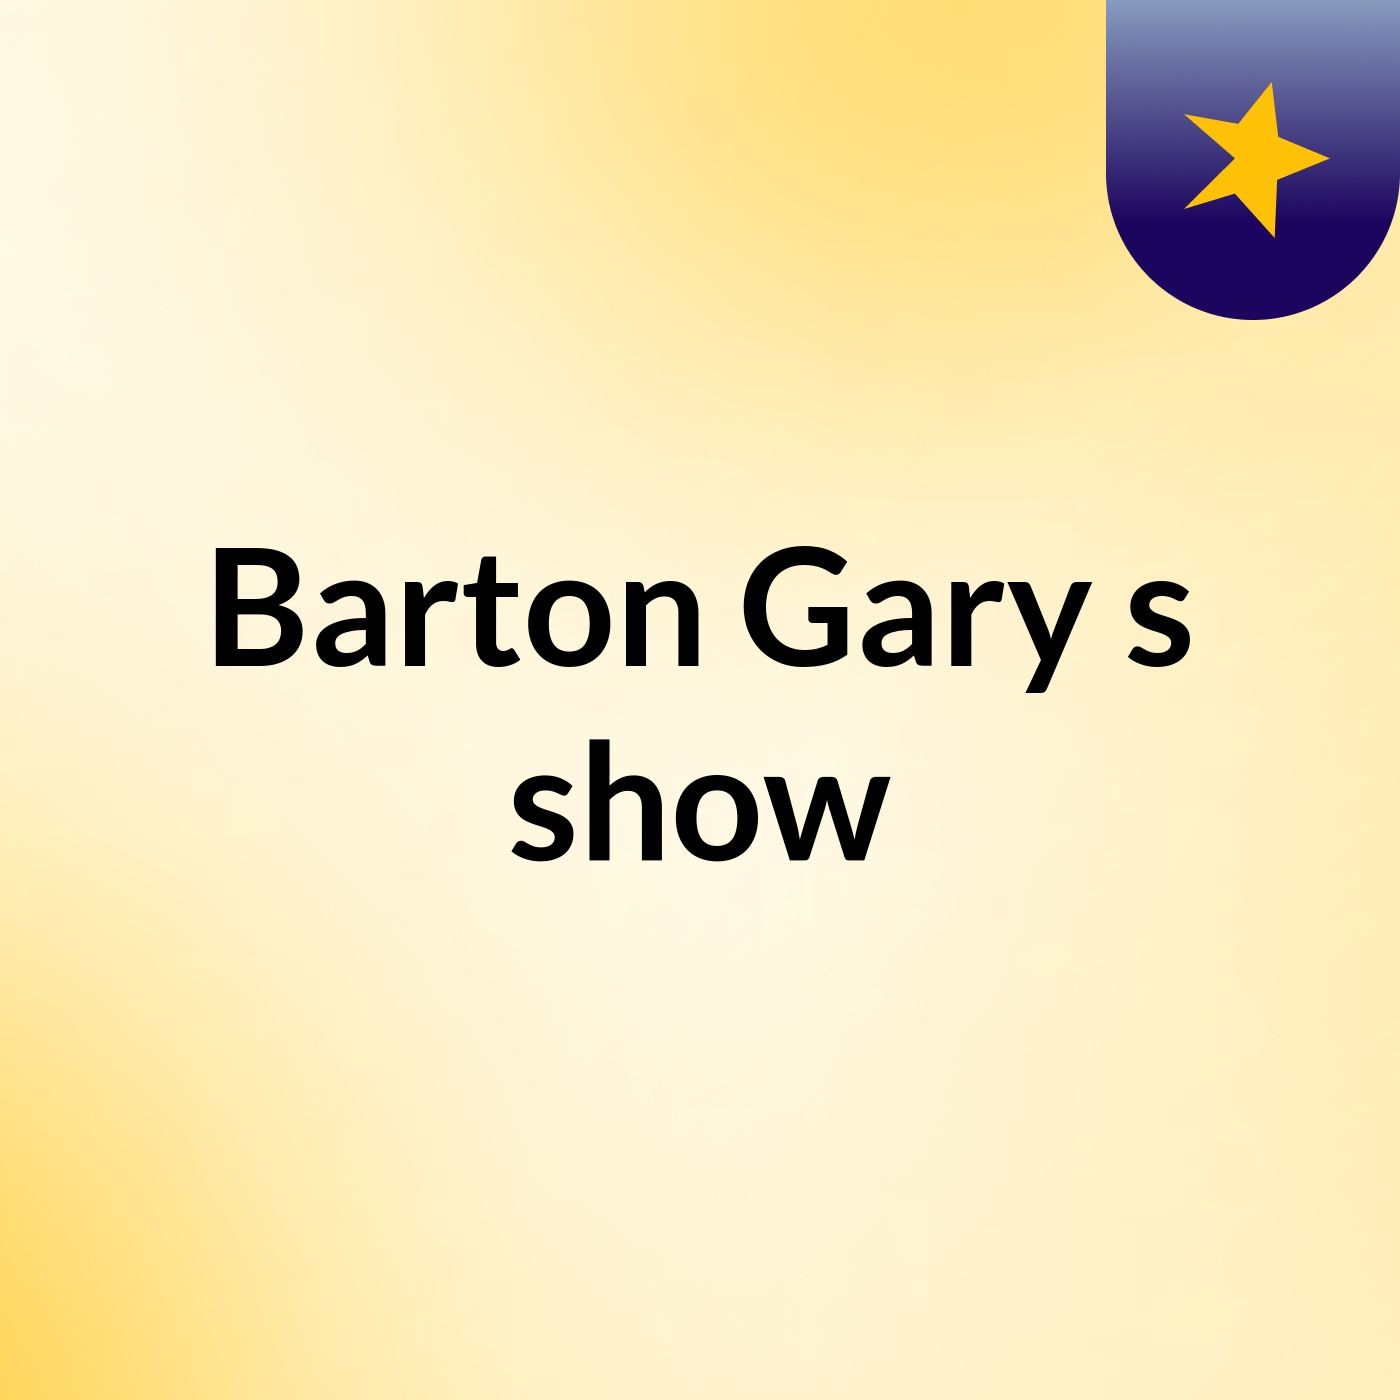 Episode 8 - Barton Gary's show